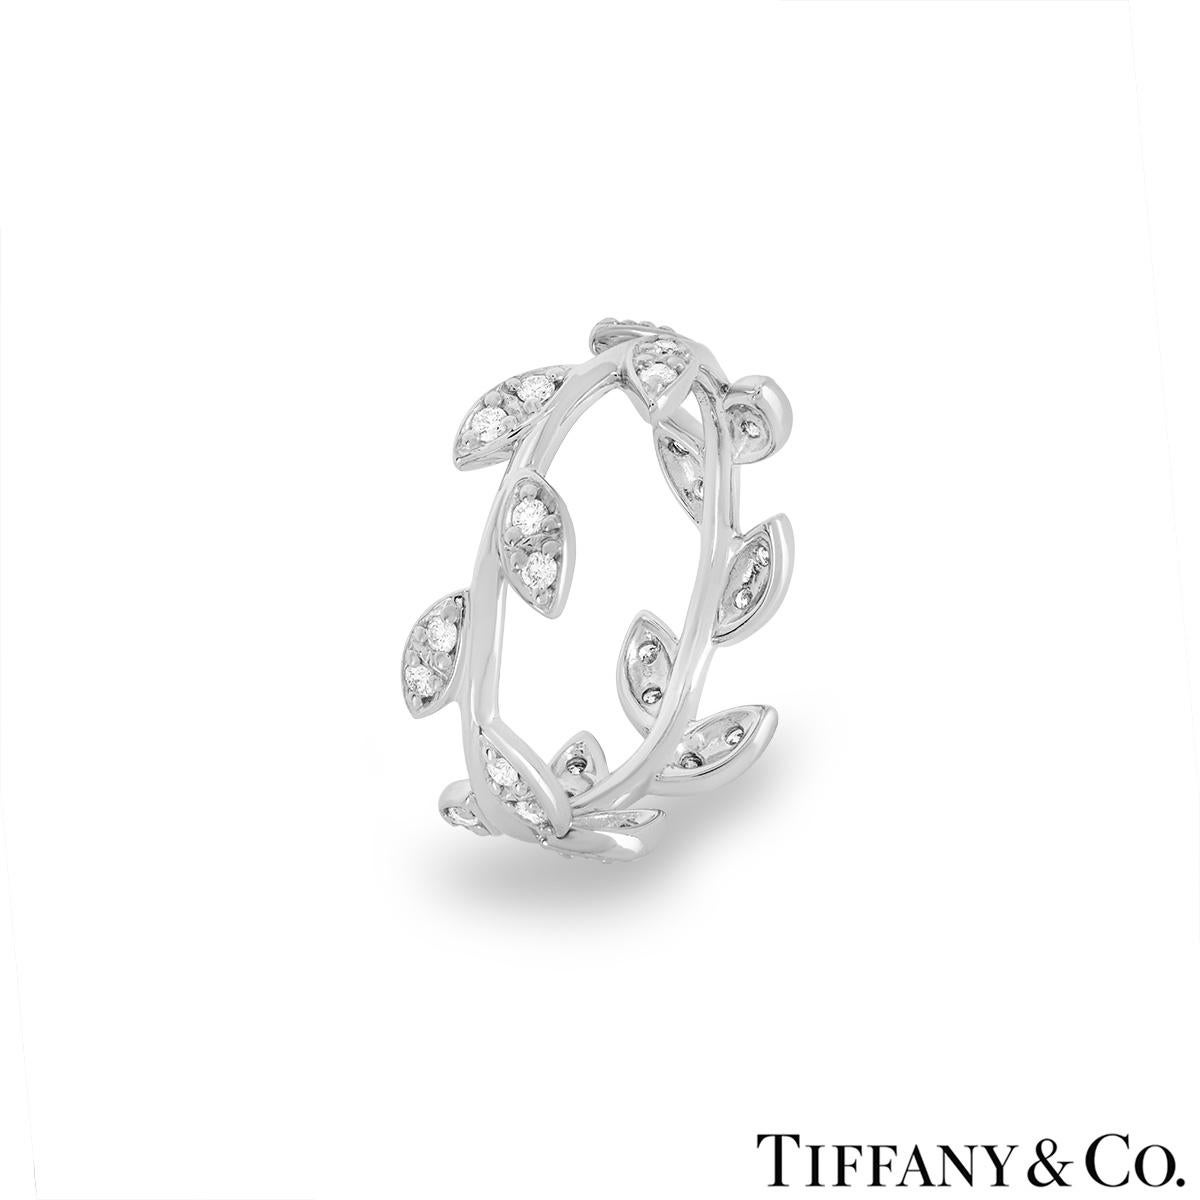 Une délicate bague en diamant en or blanc 18 carats de Tiffany & Co., issue de la collection Olive Leaf de Paloma Picasso. La bague présente un motif de feuille enroulée autour d'une tige et sertie de 28 diamants ronds de taille brillant d'un total